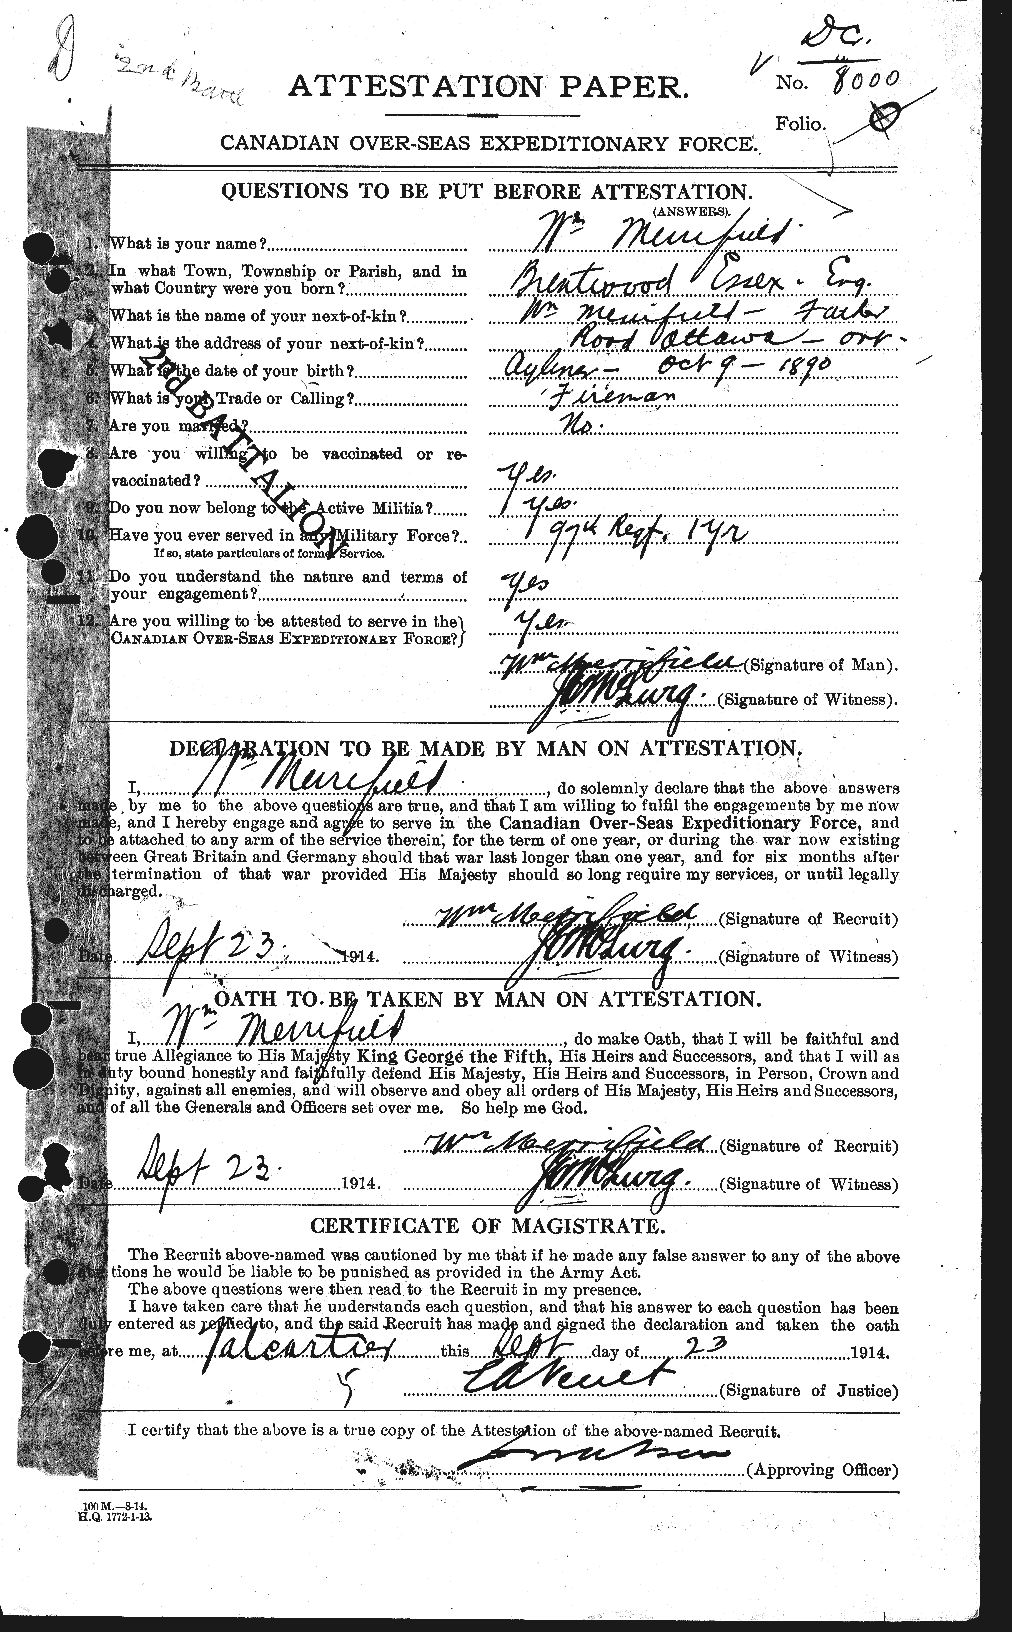 Dossiers du Personnel de la Première Guerre mondiale - CEC 490315a